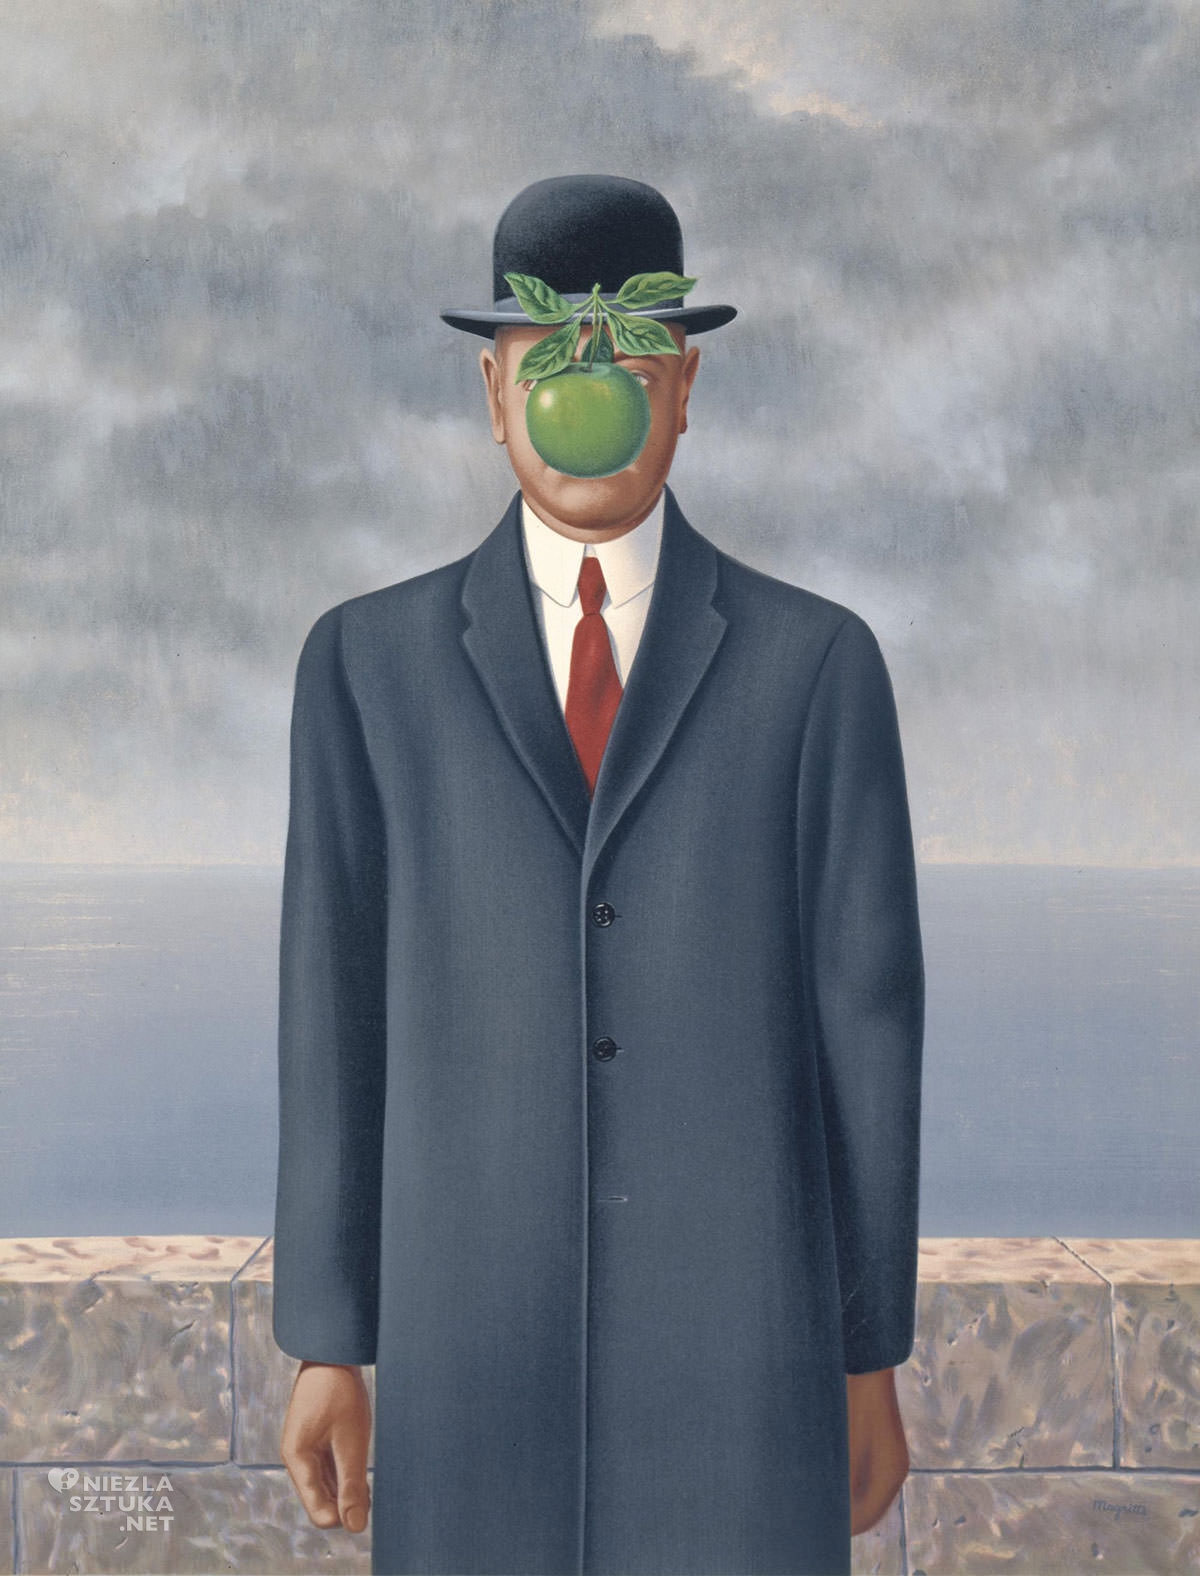 René Magritte, Syn człowieczy, surrealizm, Niezła sztuka